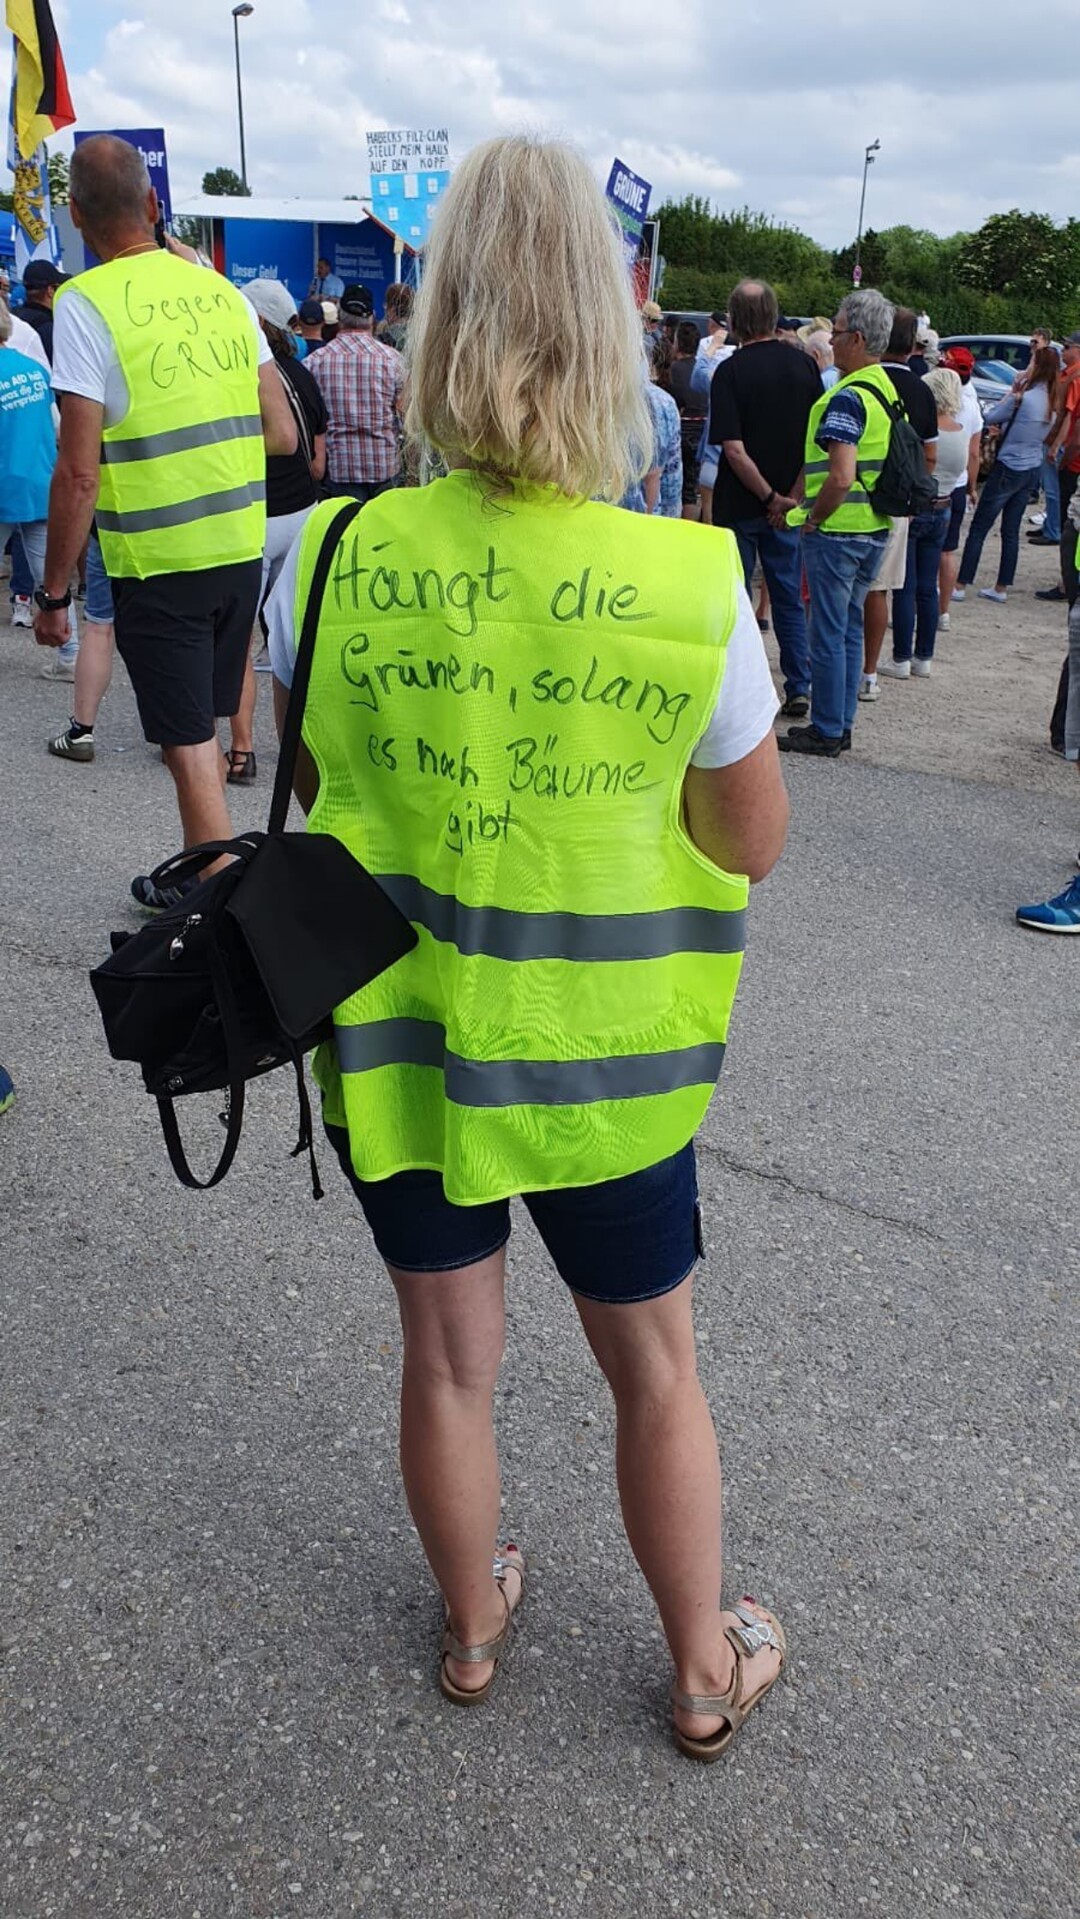 Ein Bild von der Demo in Erdingen heute:<br>Eine Frau mit langen, blonden Haaren in blauen Radlerhosen trägt über ihrer weißen Bluse eine signalgelbe Warnweste. Sie ist von hinten zu sehen, die Audschrift auf dem Rückenteil lautet<br>"Hängt die Grünen, solange es noch Bäume gibt"